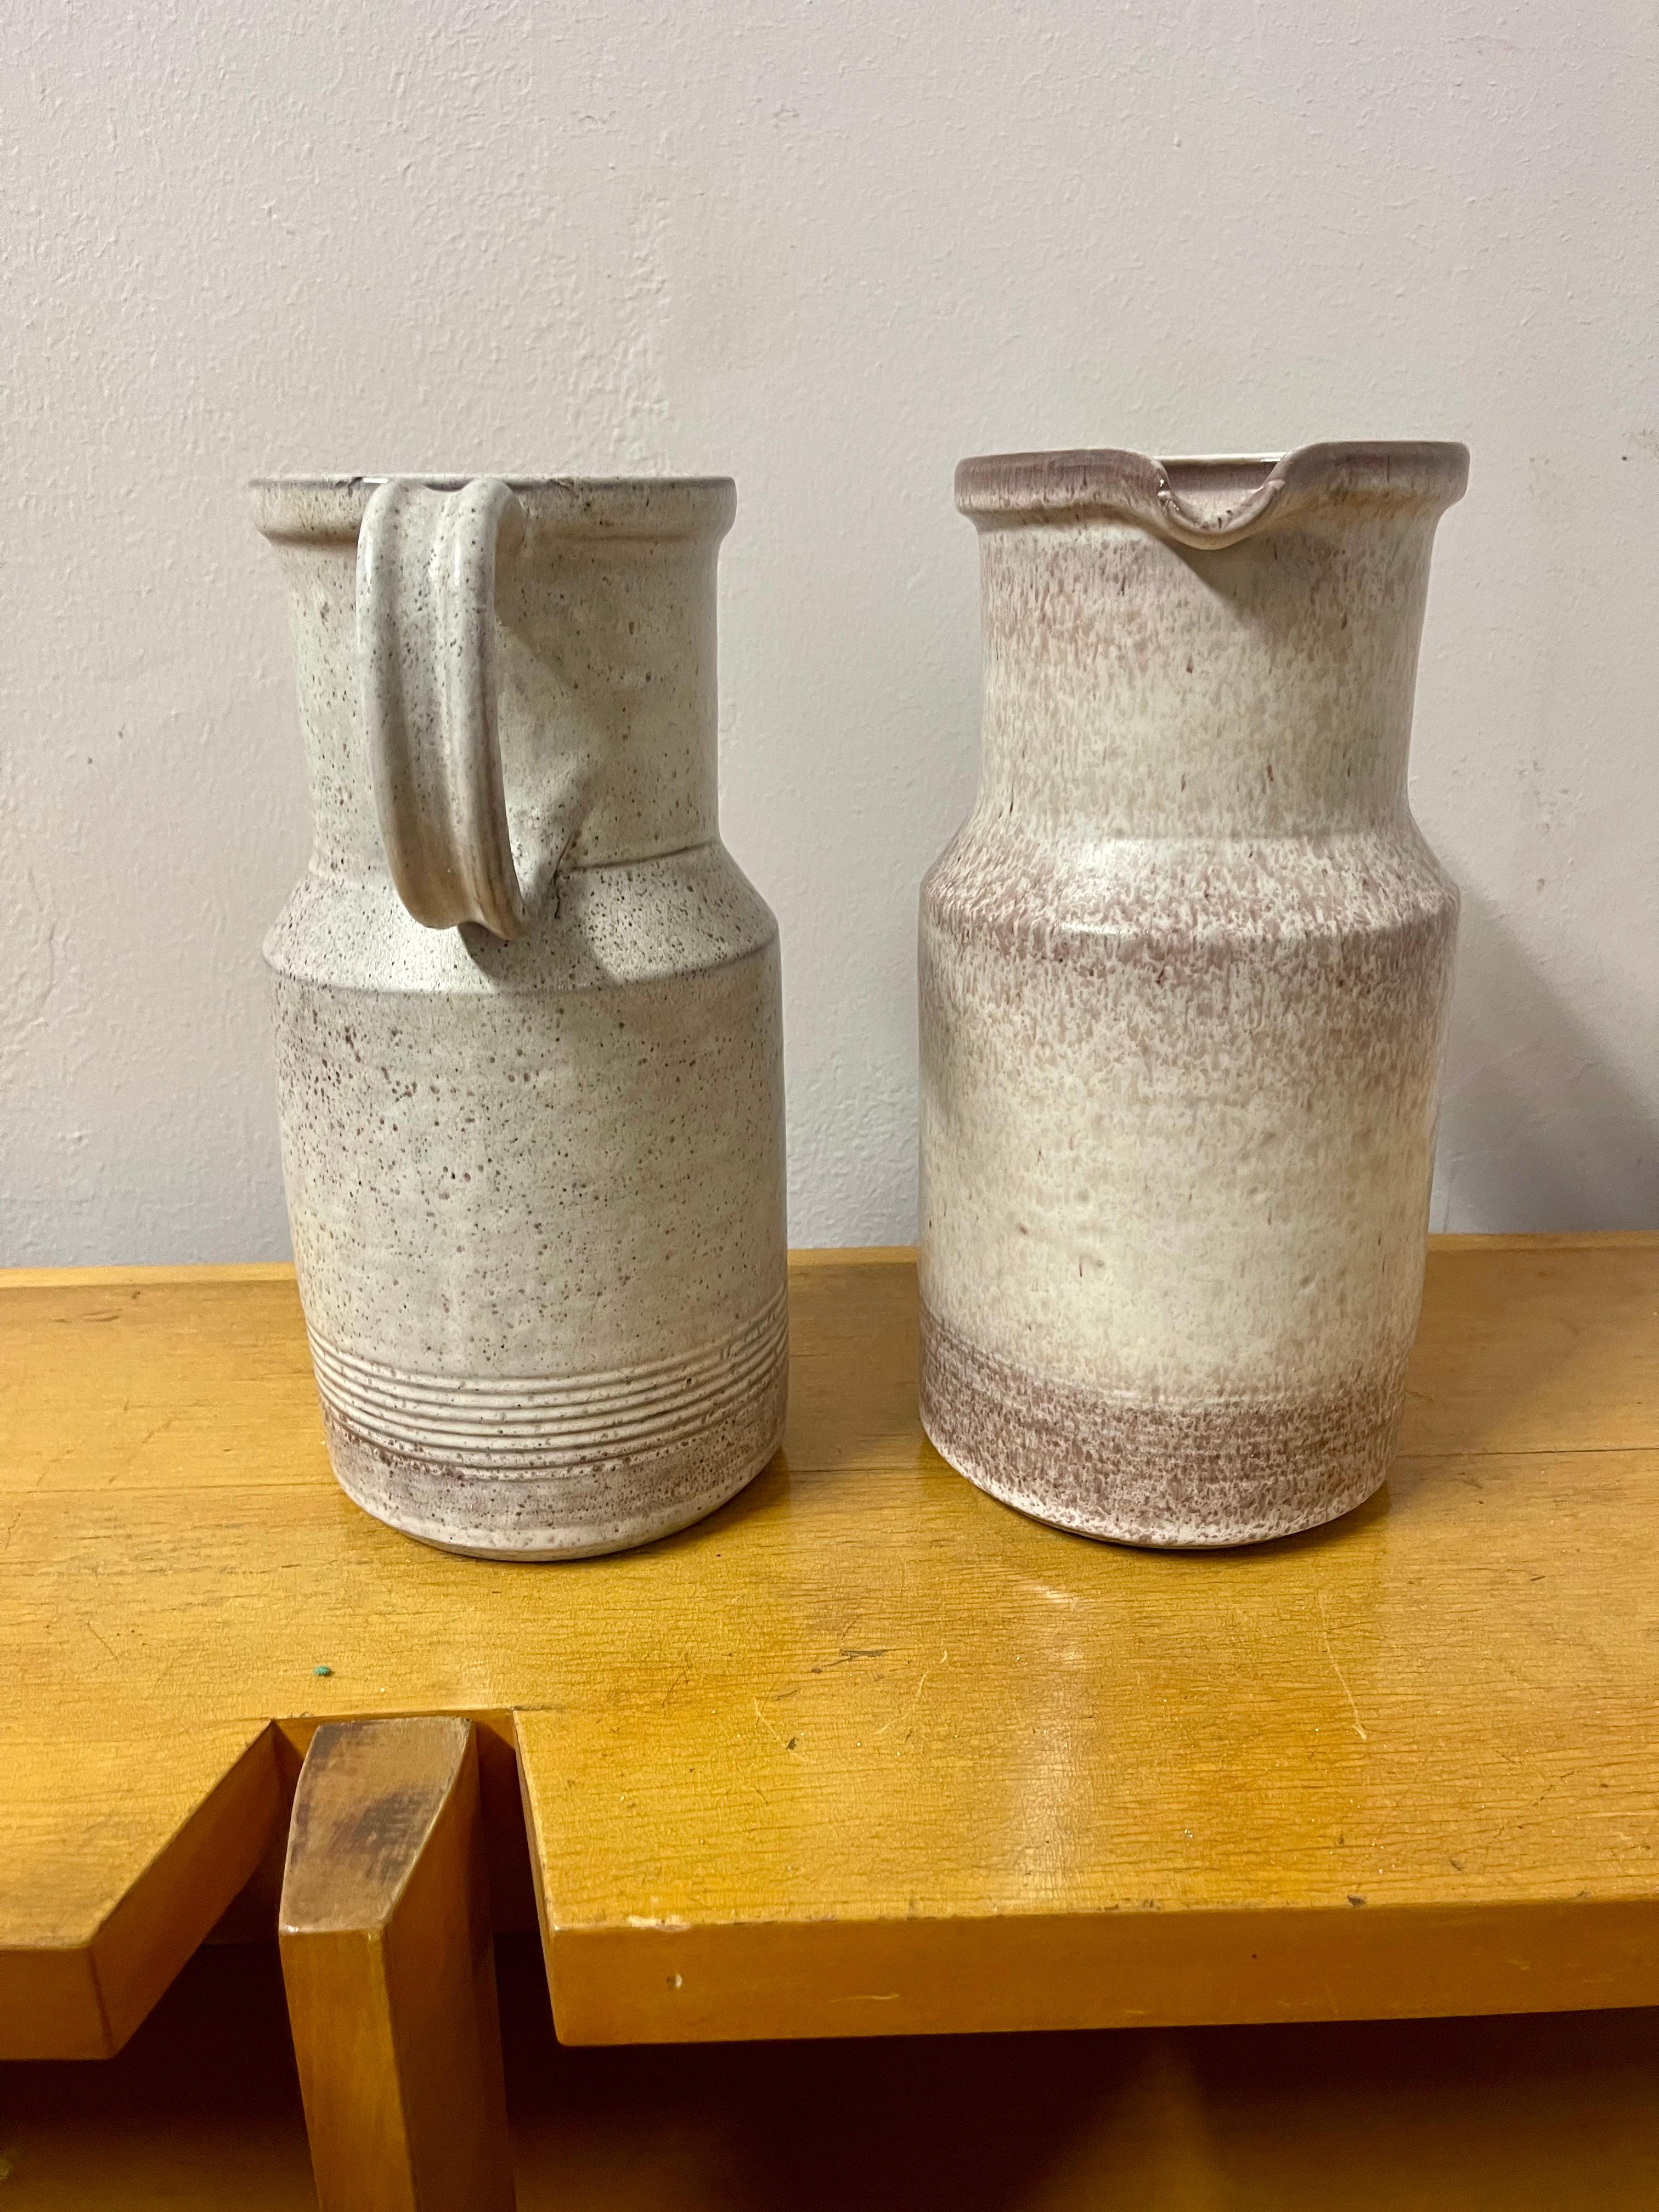 Zwei Tischkaraffen aus Grés-Keramik aus der Kollektion des italienischen Keramikers und Designers Alessio Tasca (Nove 1929 - Heilbronn 2020) aus den 1970er Jahren.
